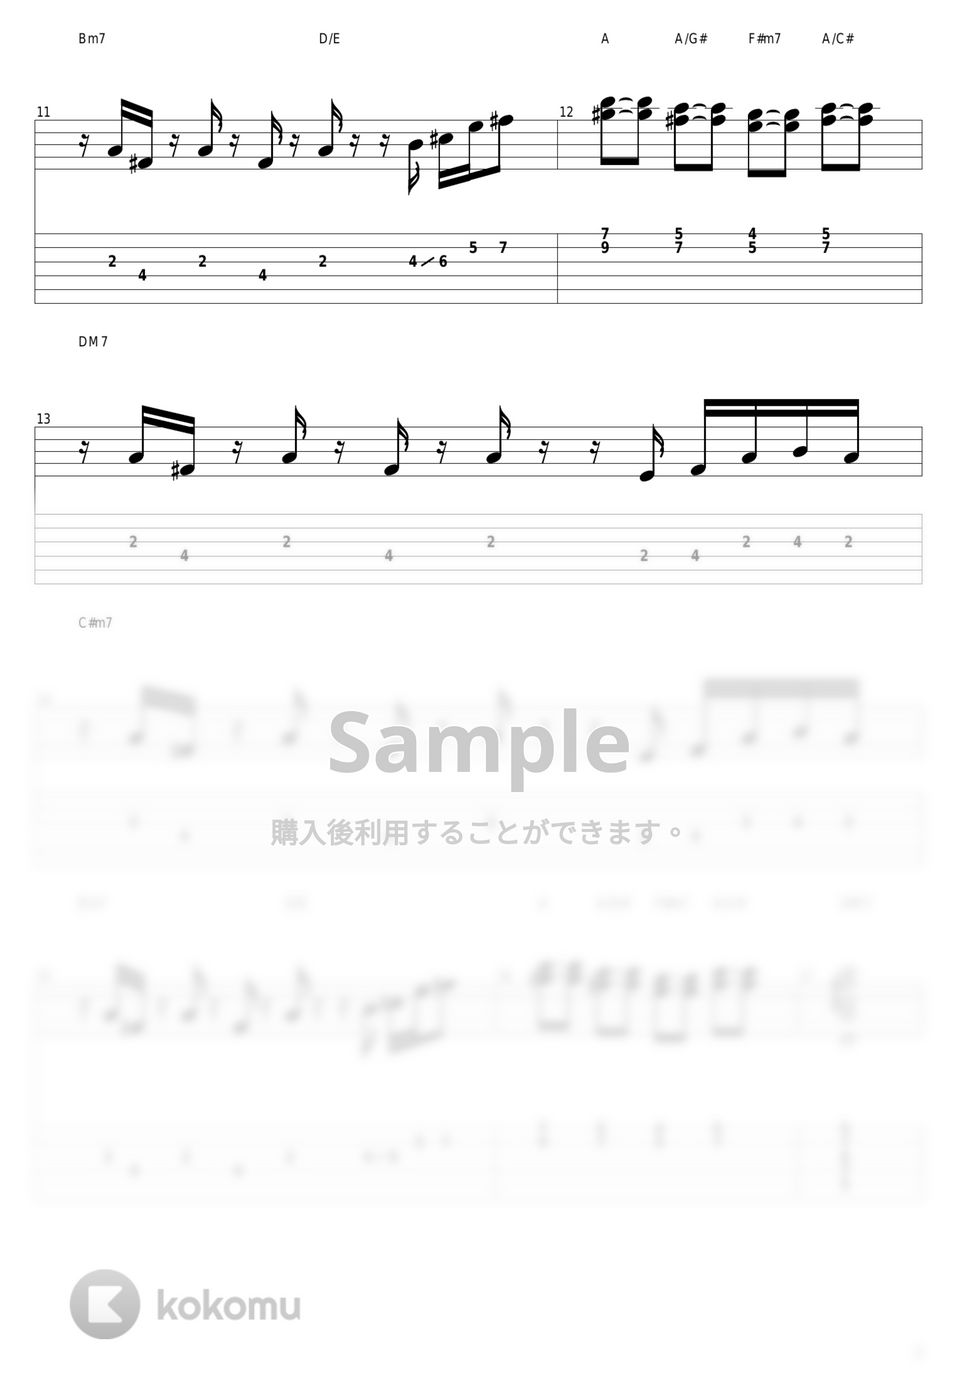 山下達郎 - Someday by guitar cover with tab